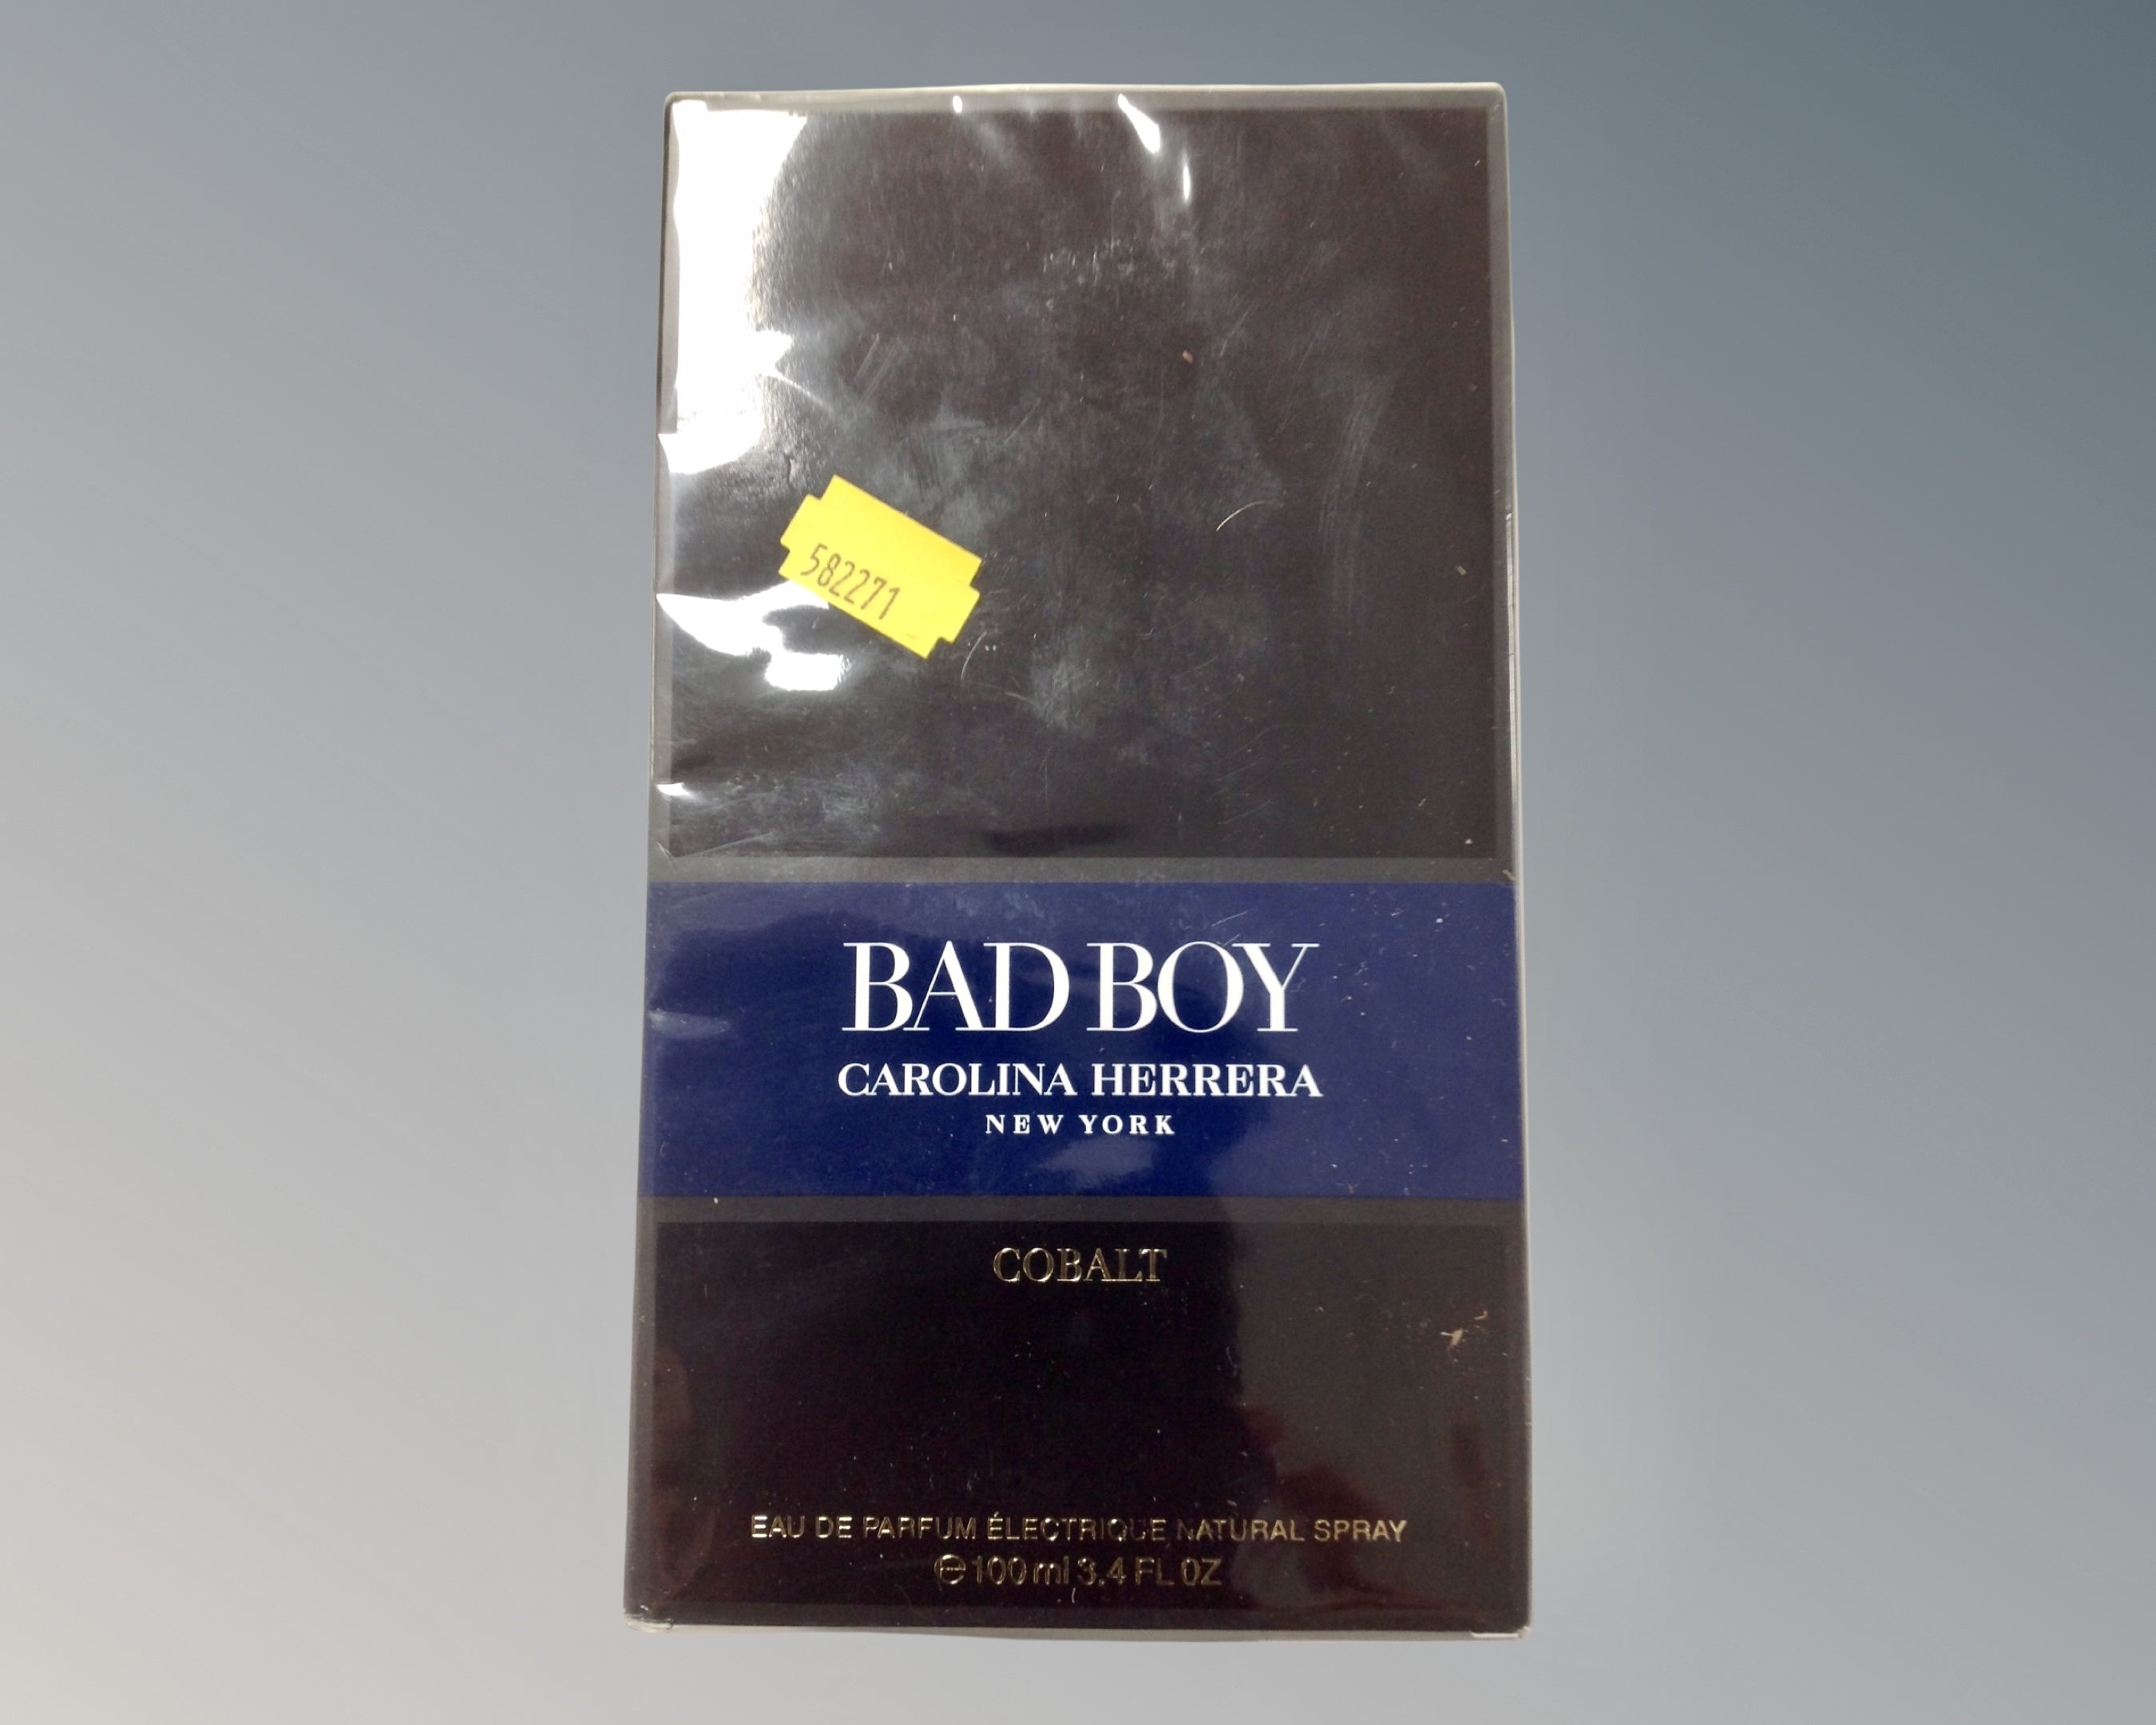 A Bad Boy by Carolina Herrera Eau du Parfum 100ml, sealed in retail box.